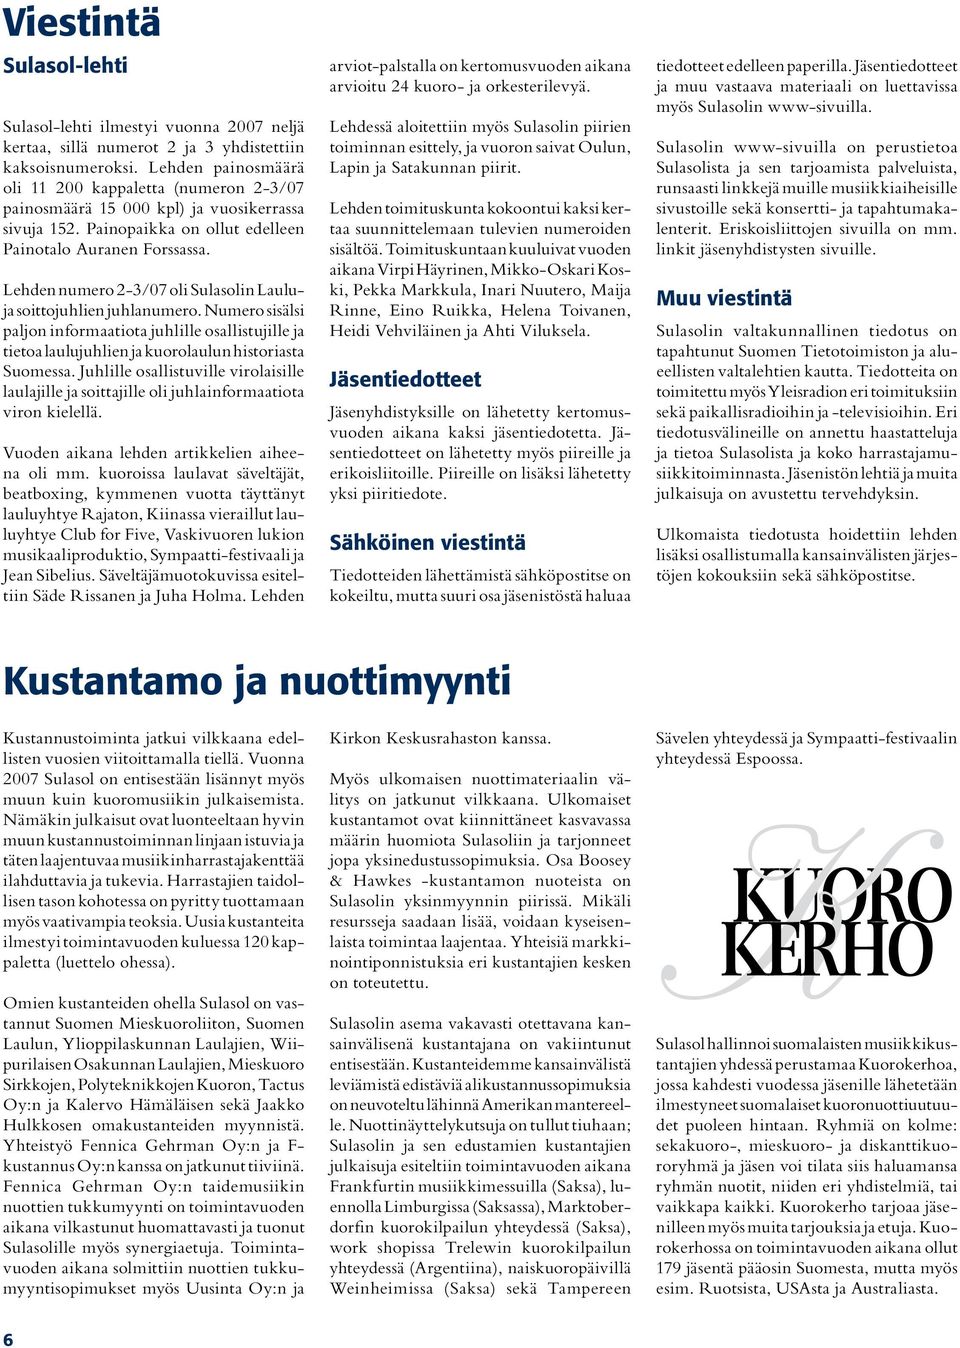 Lehden numero 2-3/07 oli Sulasolin Lauluja soittojuhlien juhlanumero. Numero sisälsi paljon informaatiota juhlille osallistujille ja tietoa laulujuhlien ja kuorolaulun historiasta Suomessa.